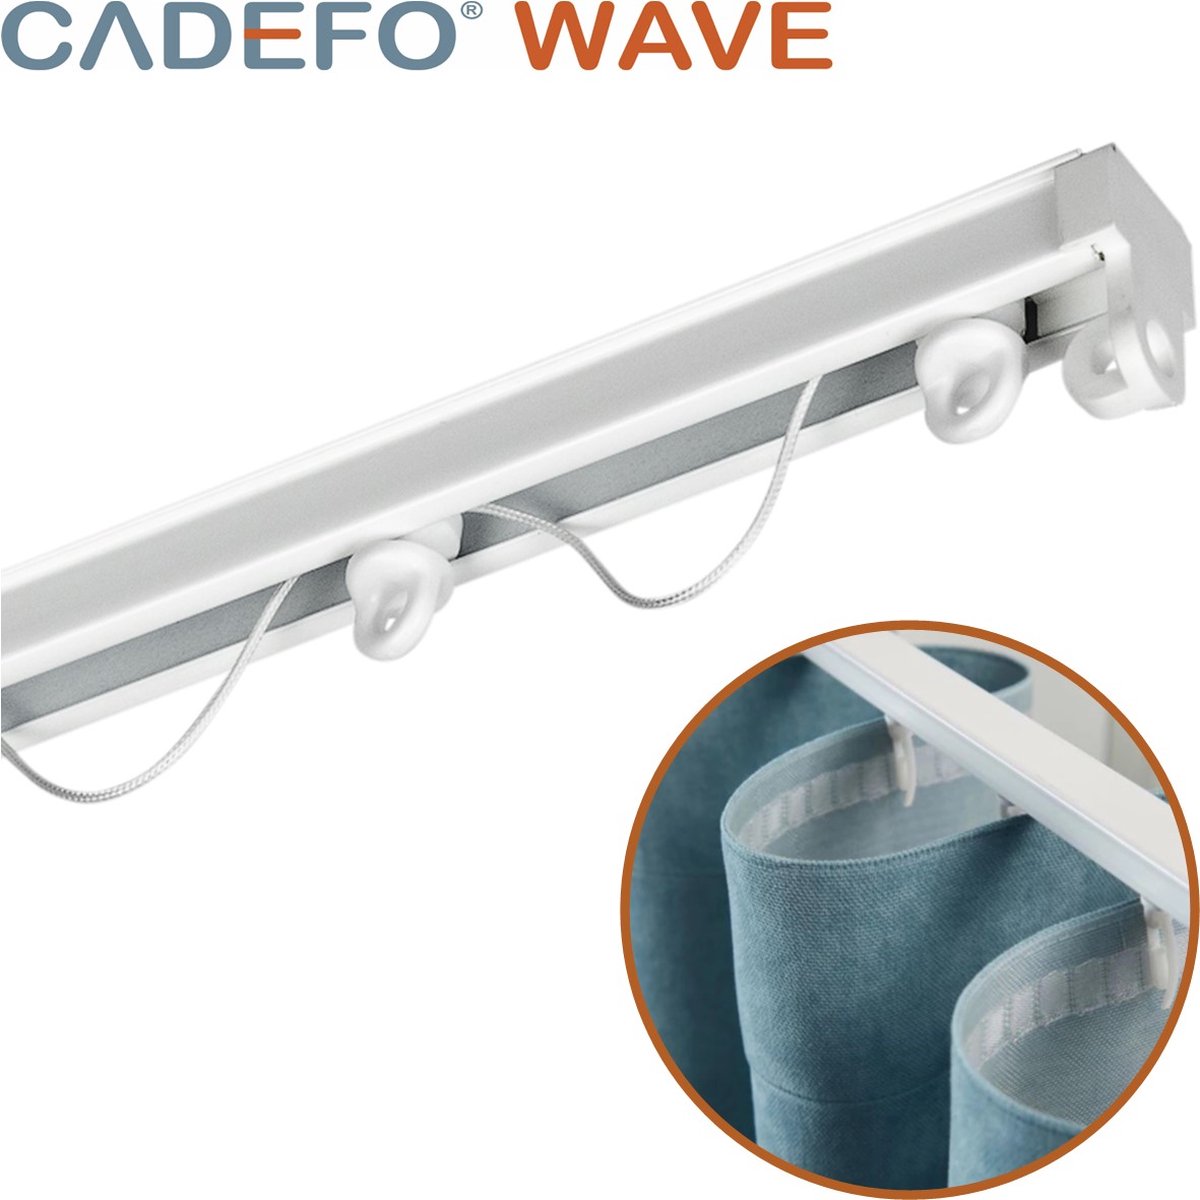 CADEFO WAVE (551 - 600 cm) Gordijnrails - Compleet op maat! - UIT 1 STUK - Leverbaar tot 6 meter - Plafondbevestiging - Lengte 561 cm